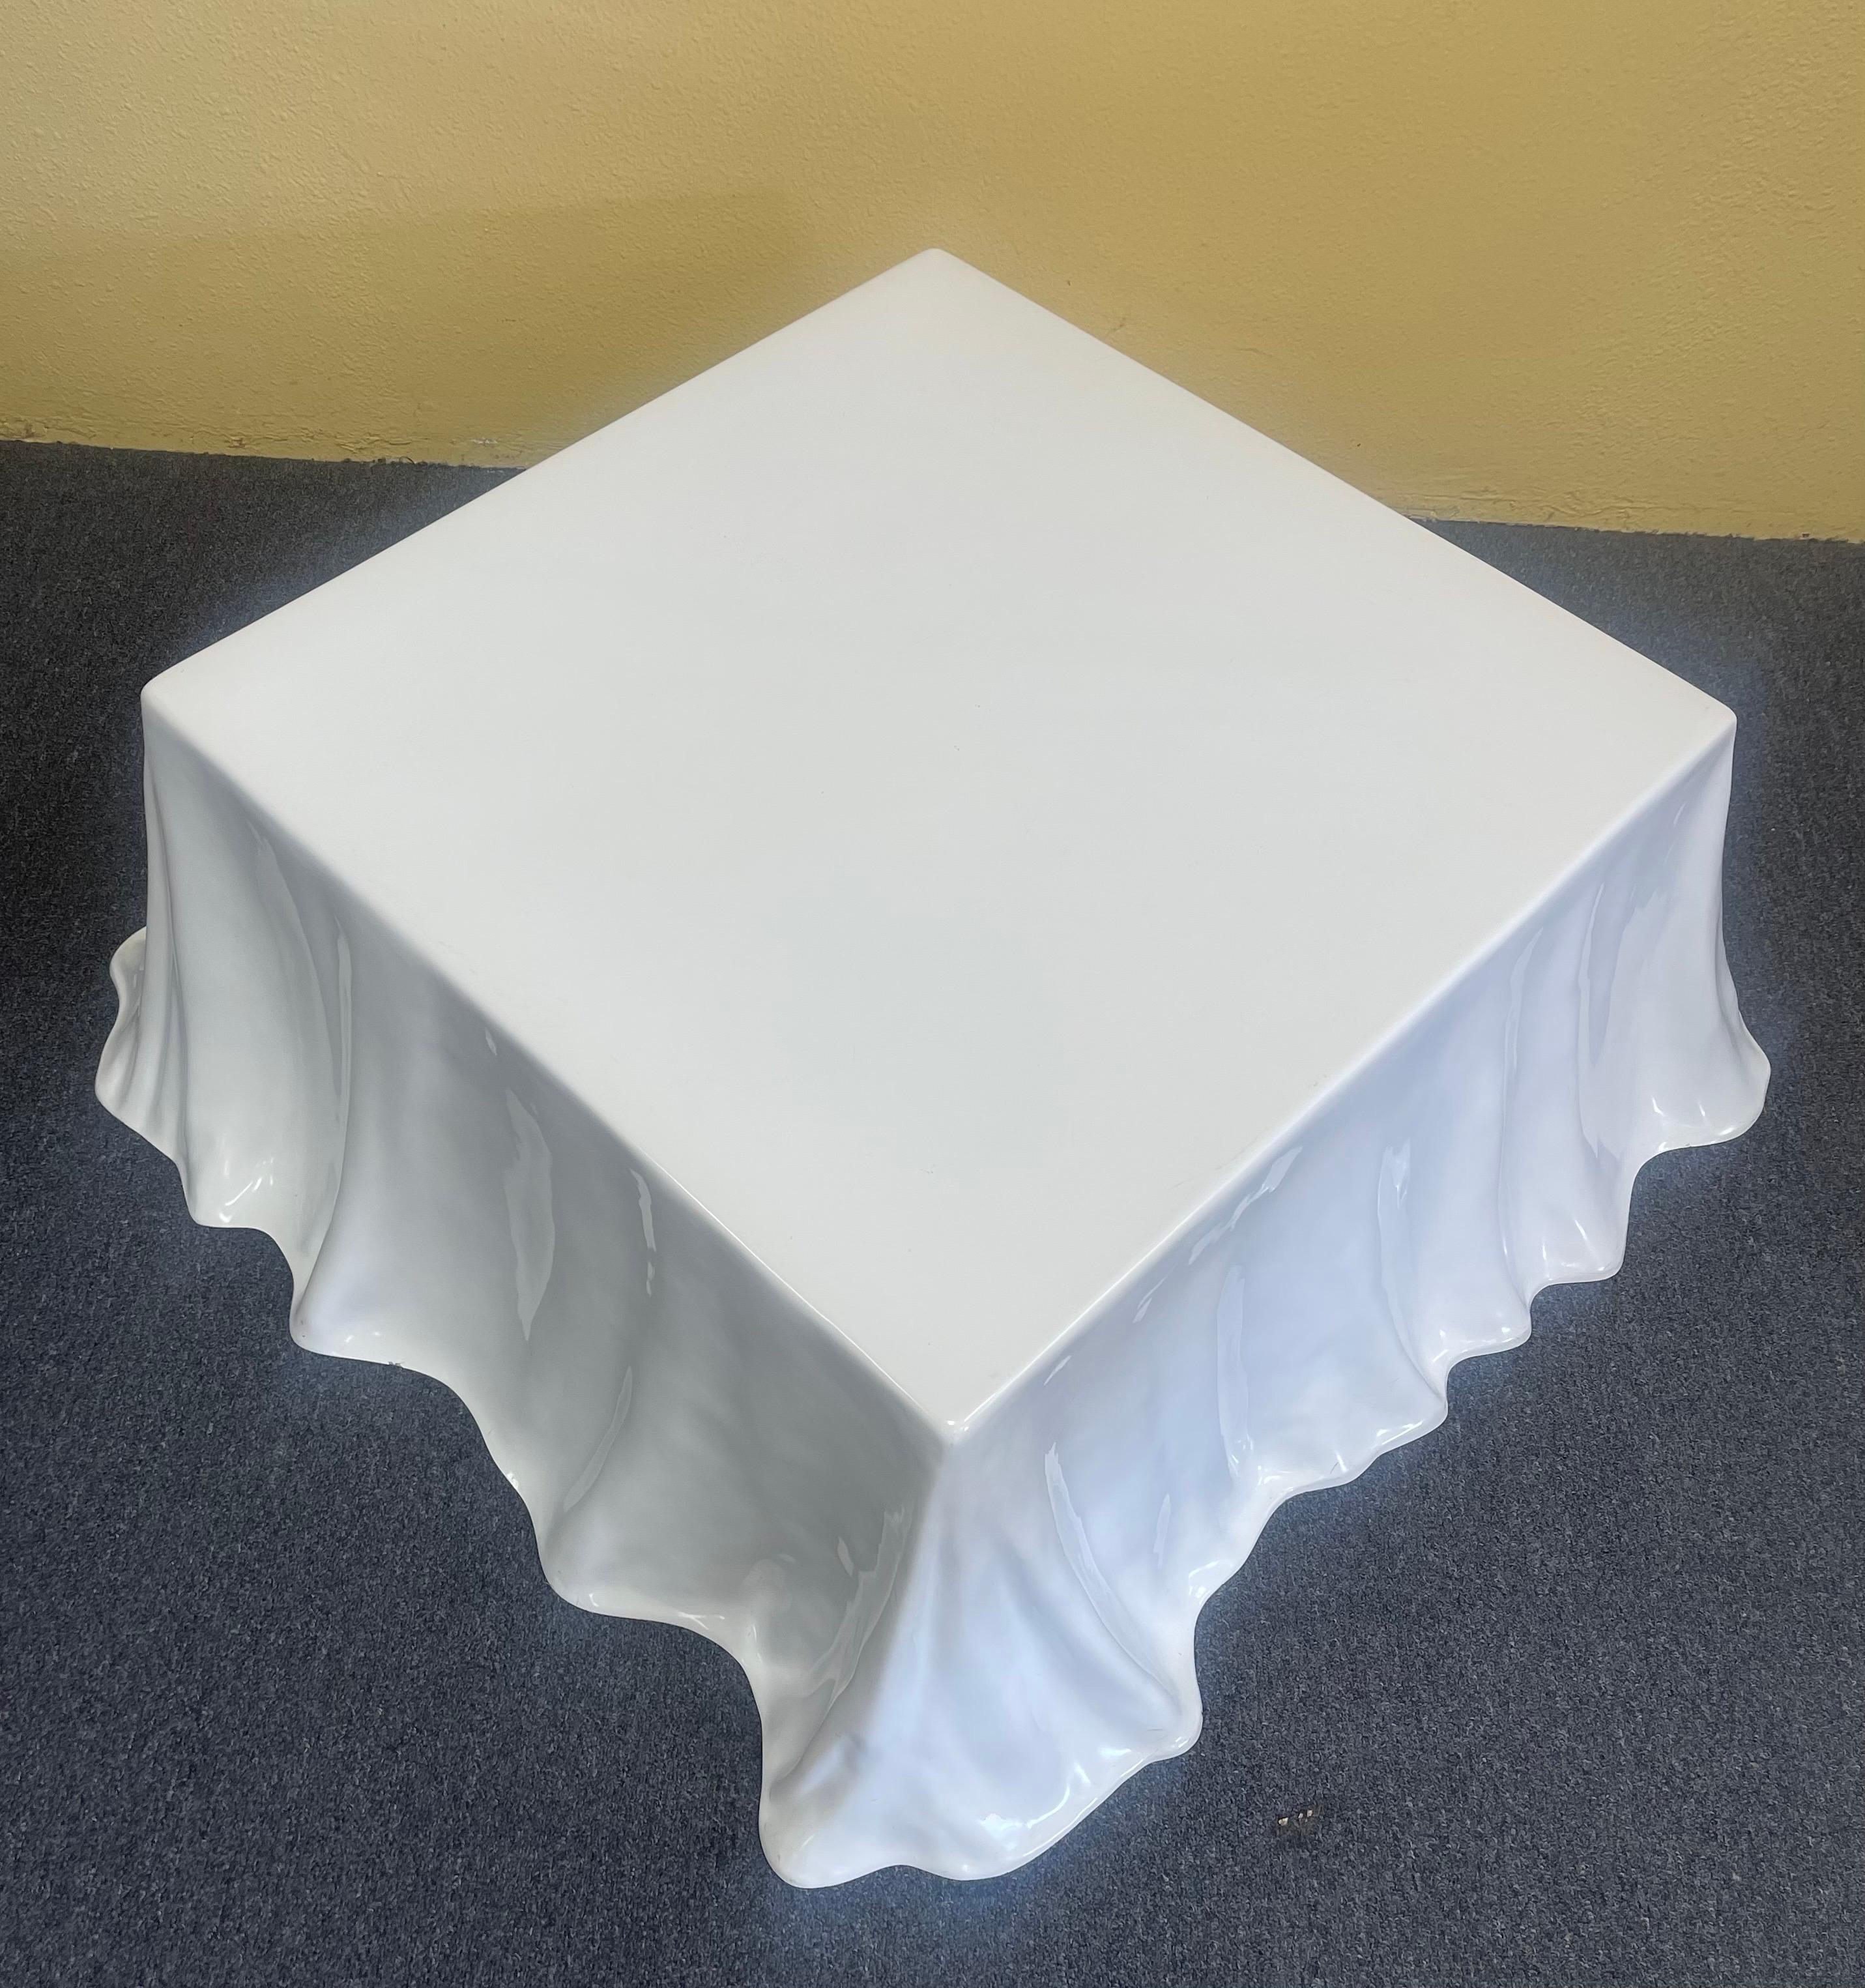 Italian Rare Tovaglia / Tablecloth Coffee Table by Alberto Bazzani for Studio Tetrarch